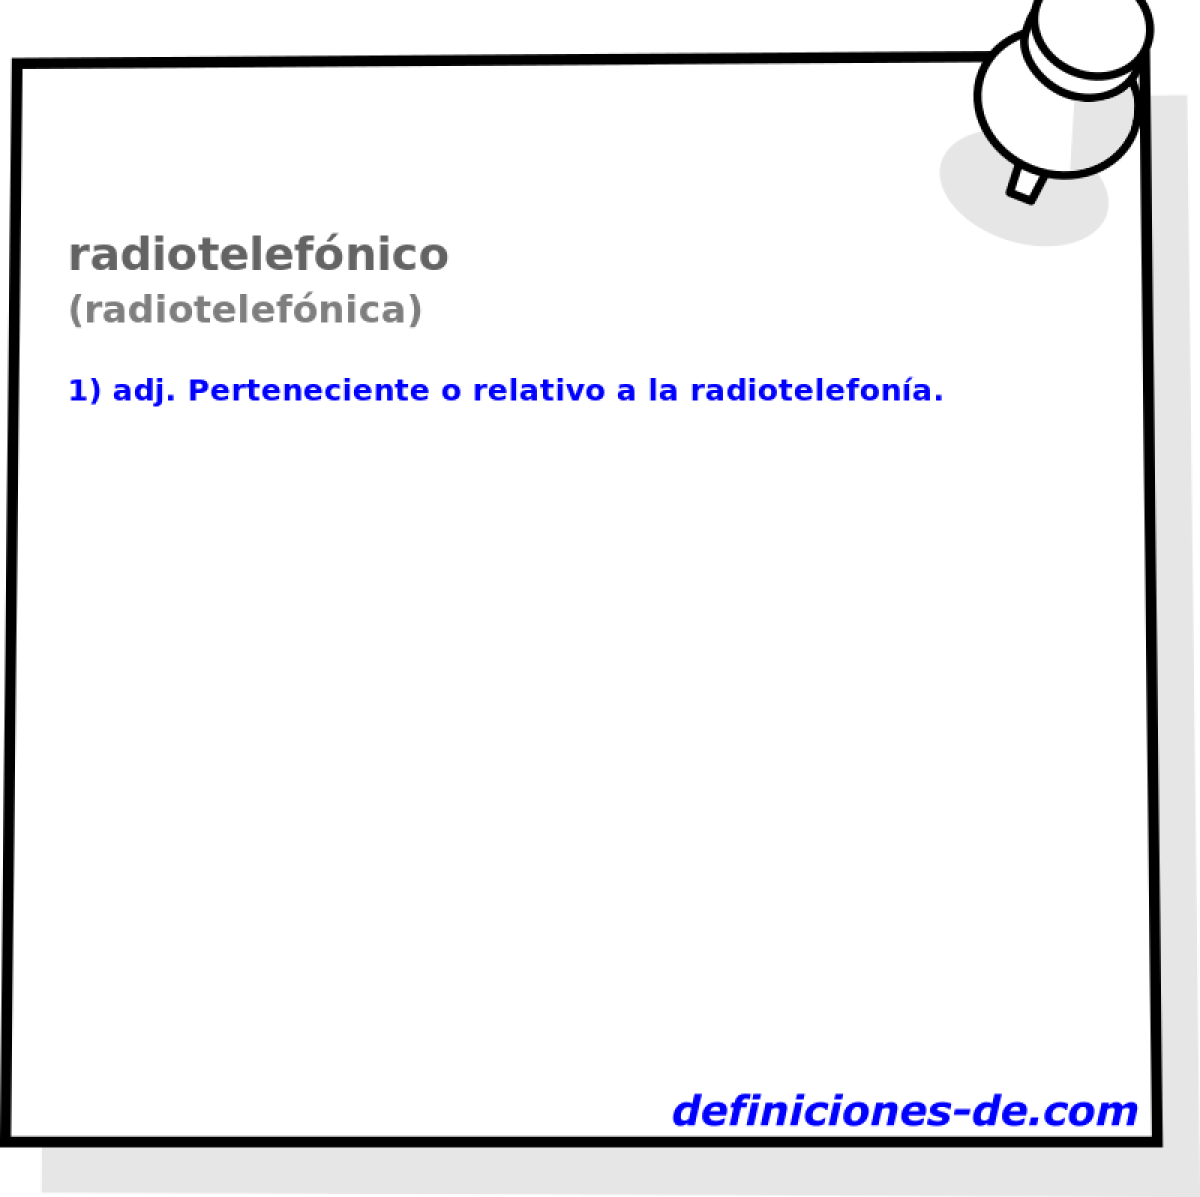 radiotelefnico (radiotelefnica)